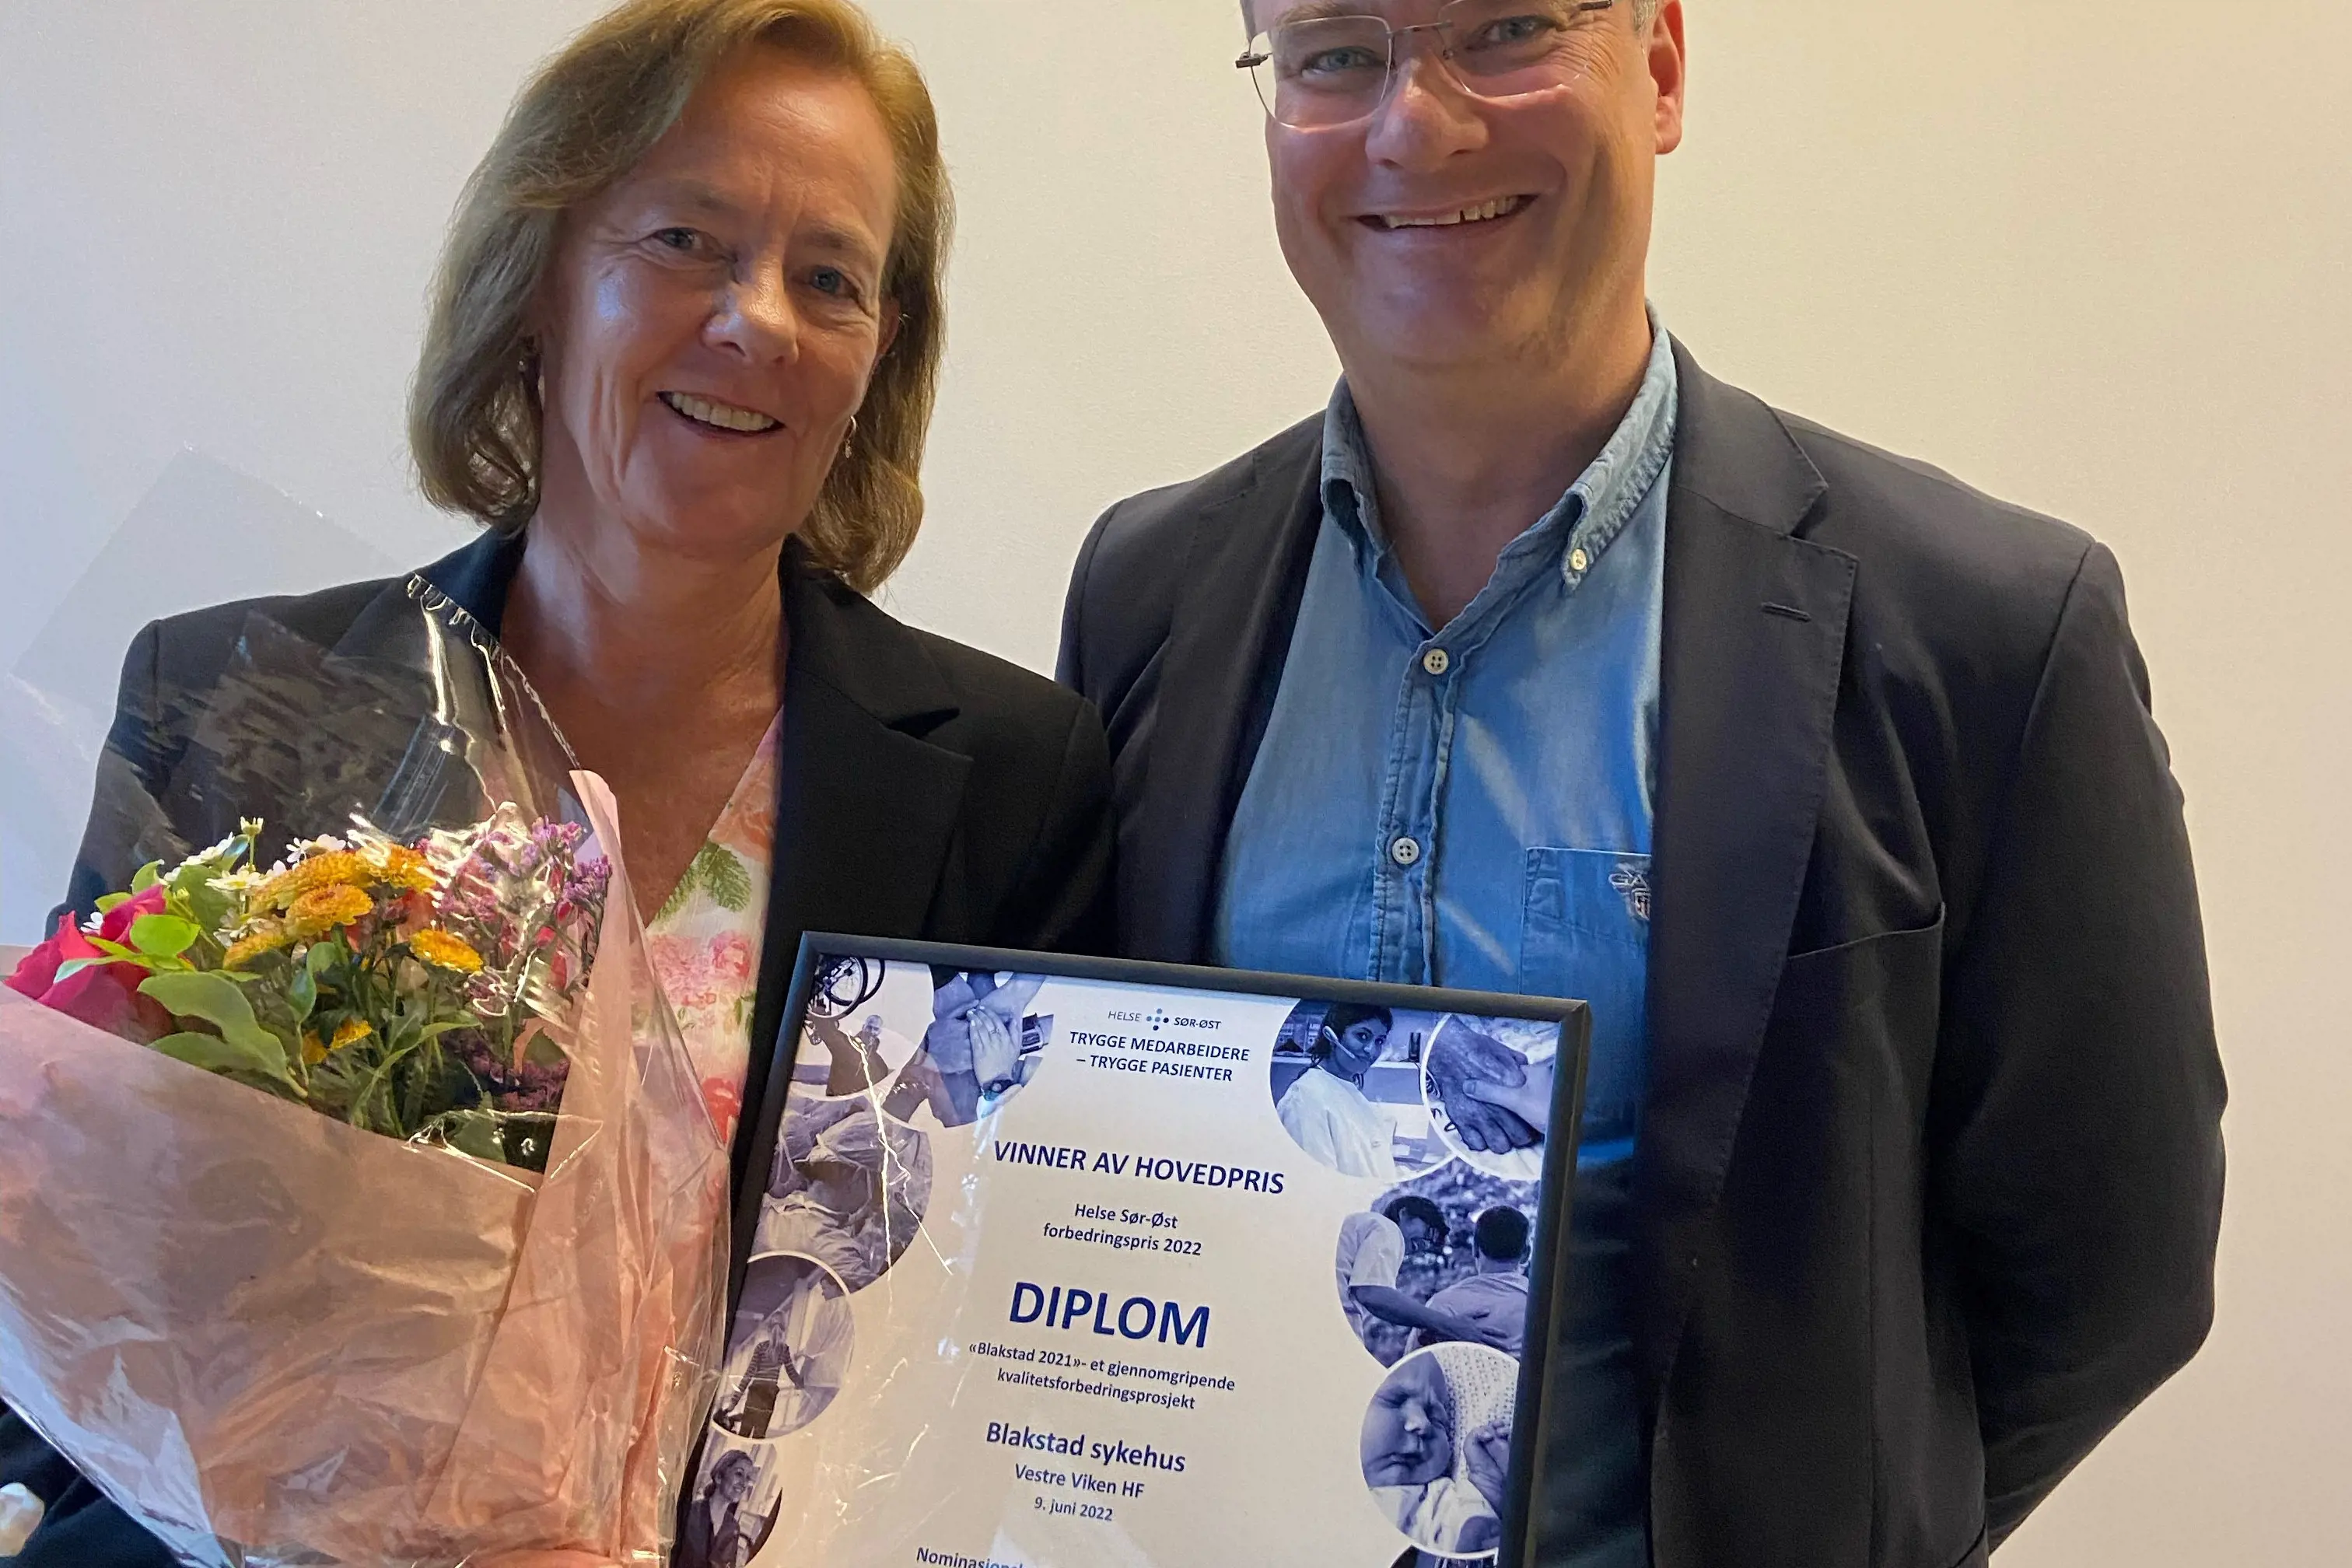 Klinikksjef Kirsten Hørthe i Vestre Viken mottok prisen for forbedringsarbeidet ved Blakstad sykehus fra viseadministrerende dir